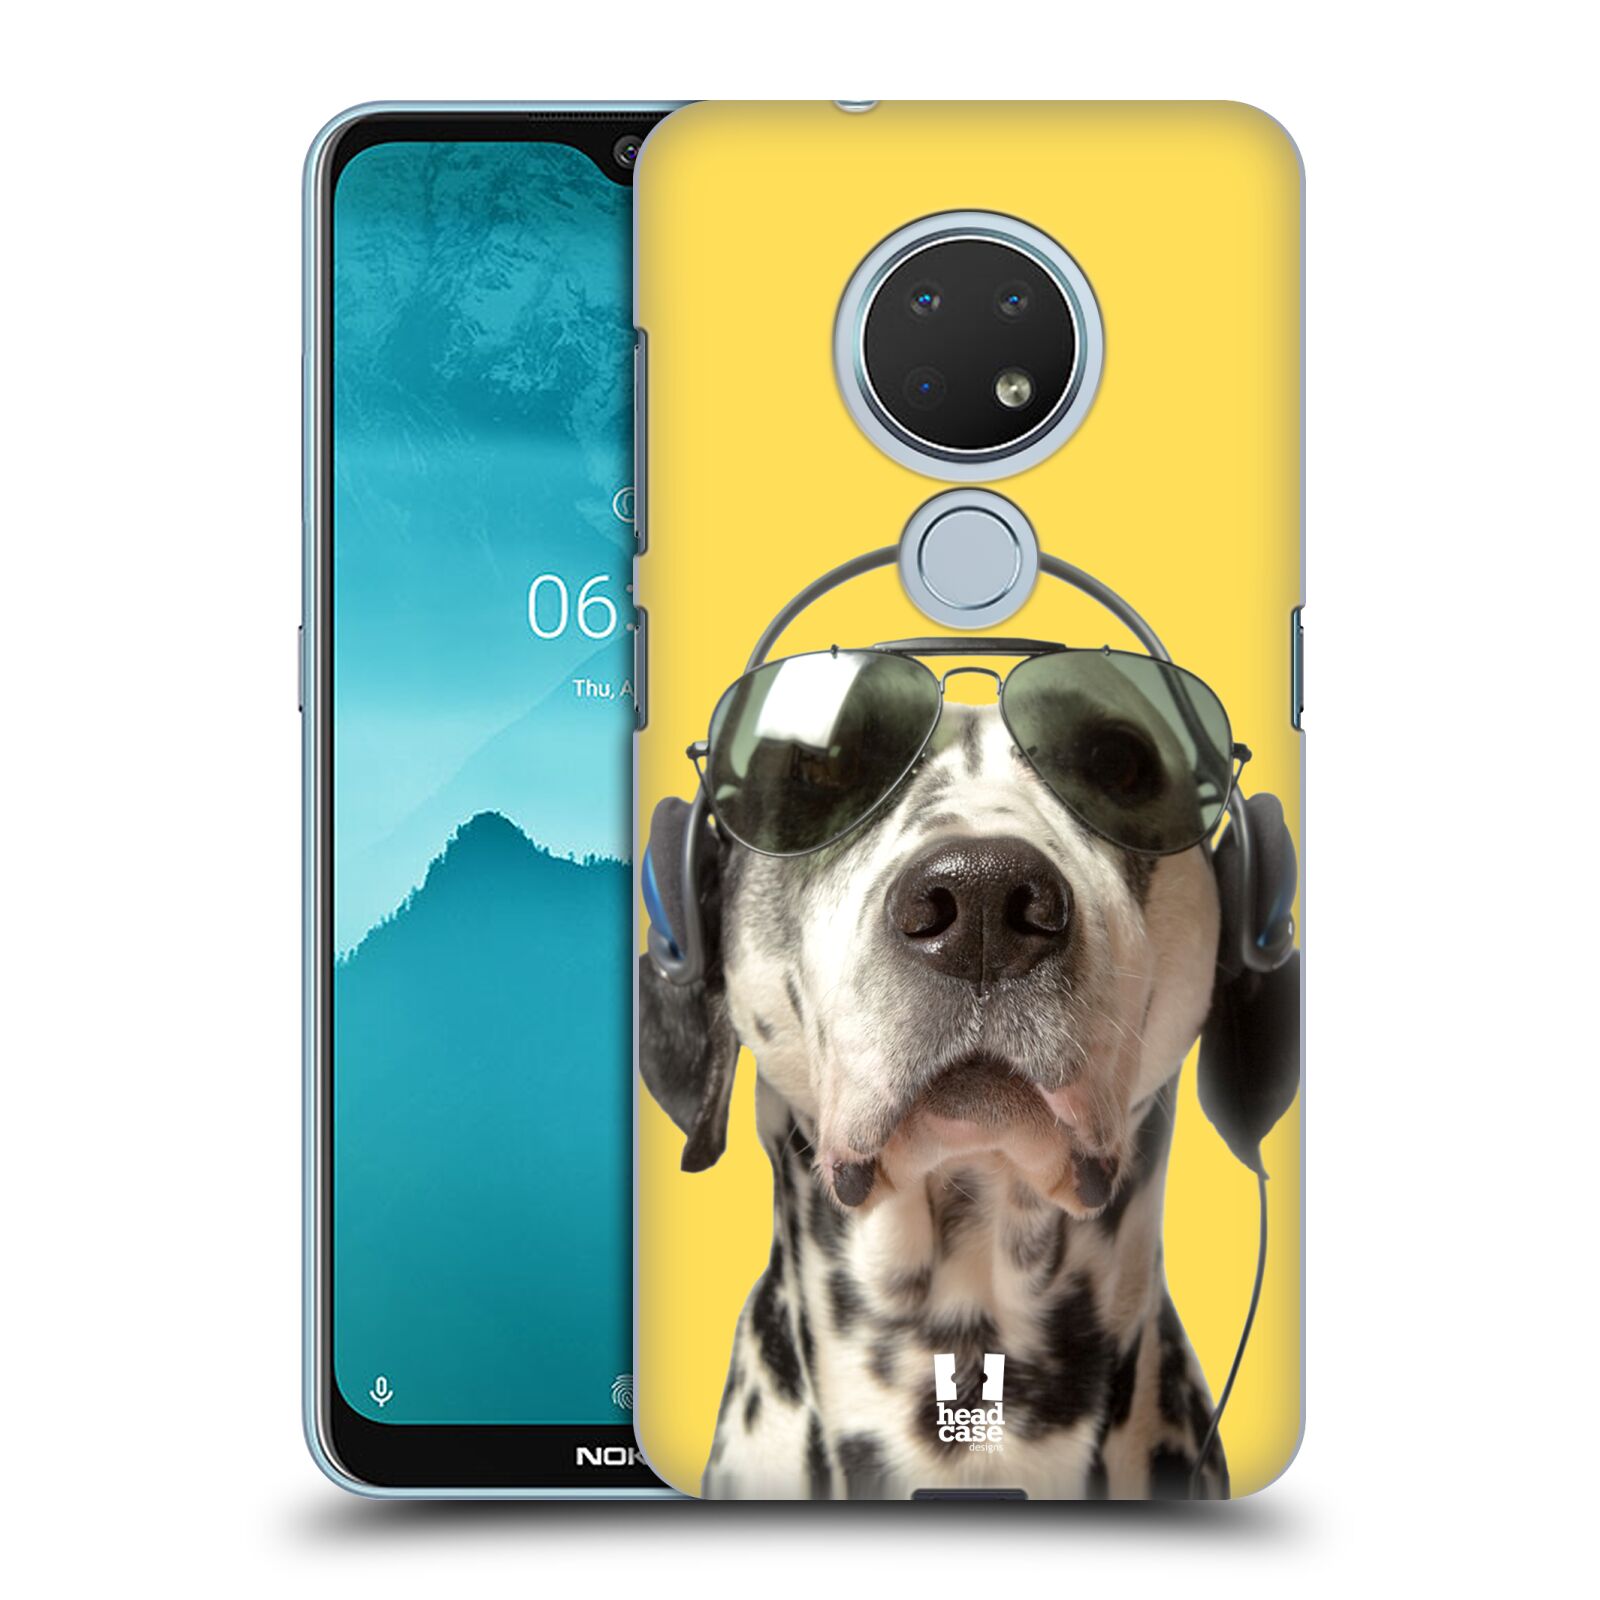 Pouzdro na mobil Nokia 6.2 - HEAD CASE - vzor Legrační zvířátka dalmatin se sluchátky žlutá